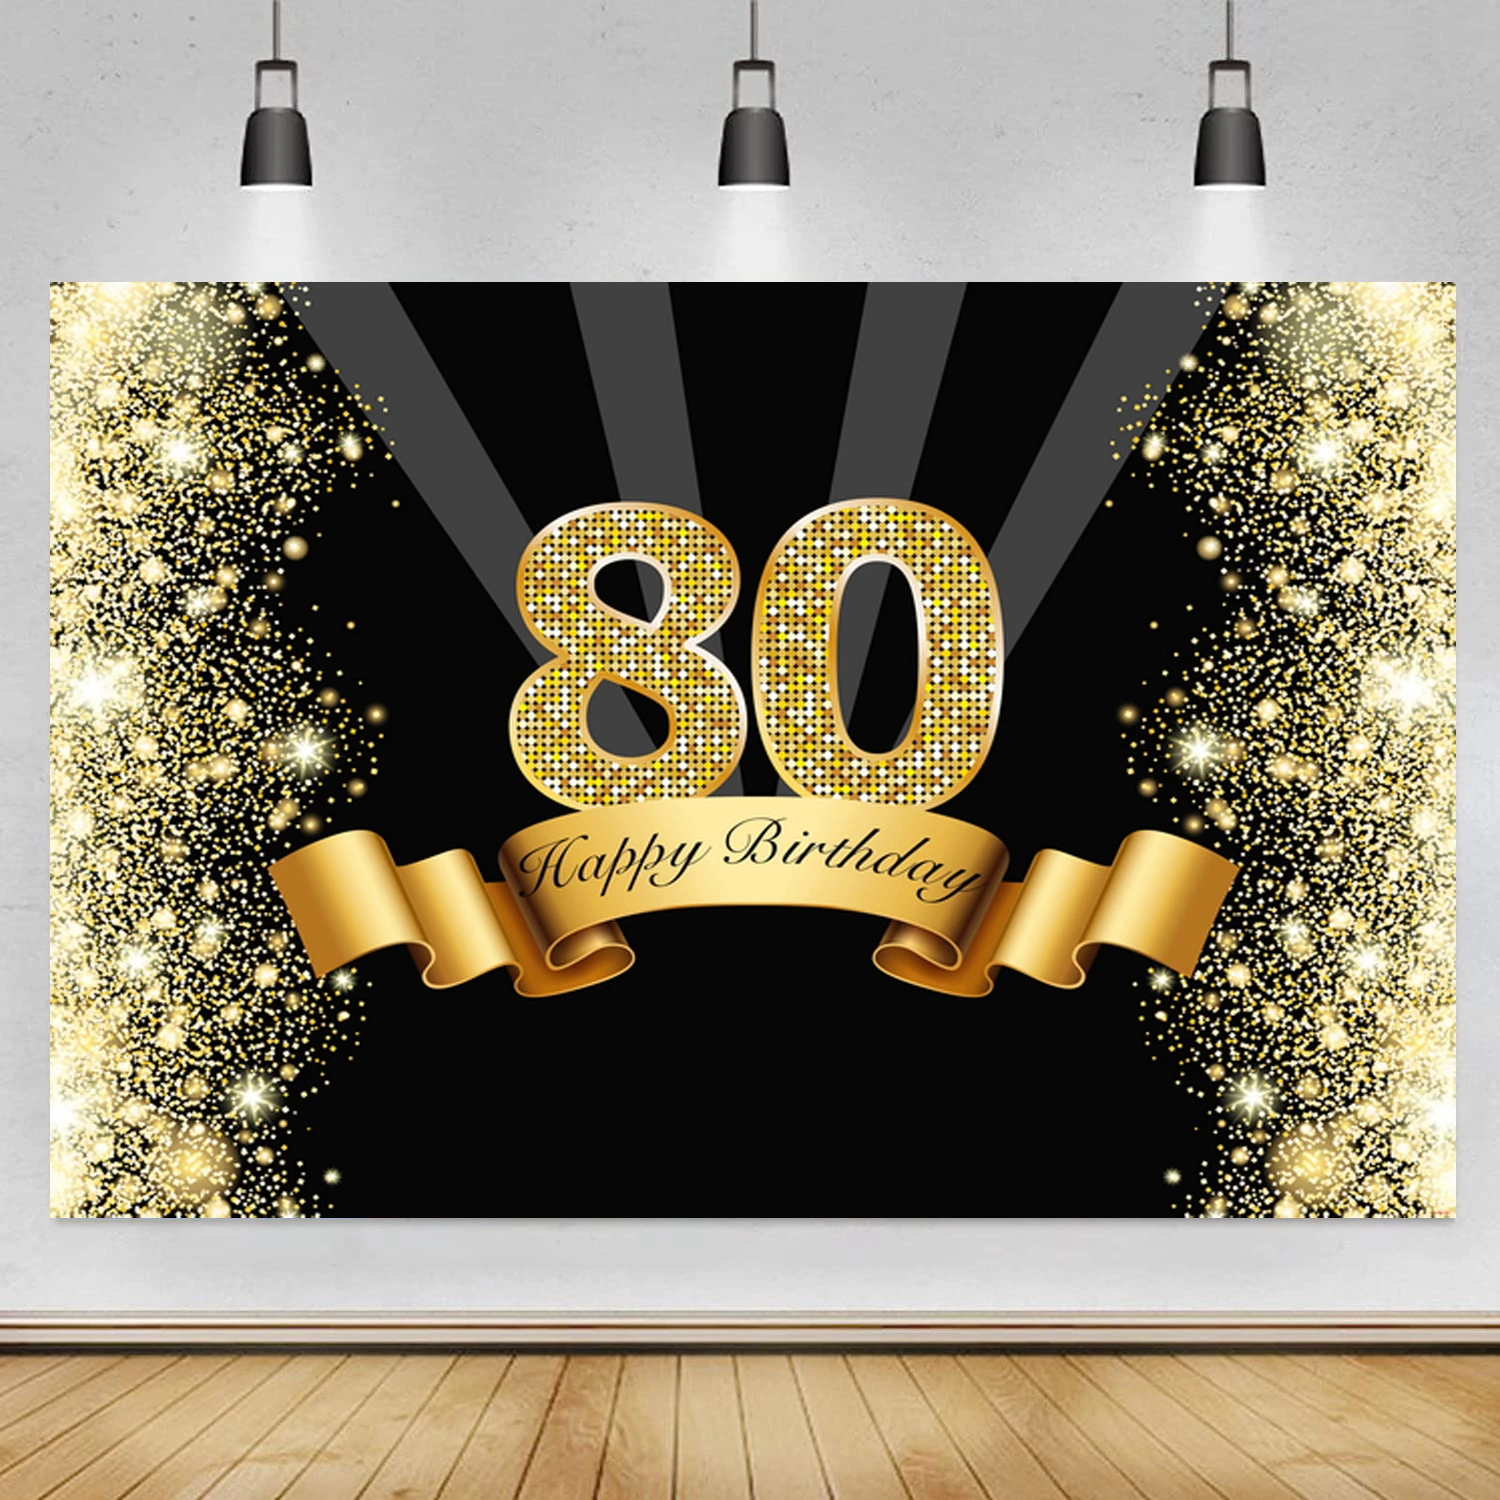 Hậu cảnh sinh nhật 80 tuổi sẽ tạo ra không gian ấm áp và đầy ý nghĩa cho cuộc tiệc của bạn. Từ các chi tiết nhỏ nhặt đến những hình ảnh sinh động, nó sẽ mang lại sự trang trọng và đáng kỷ niệm cho cả những khách mời và chủ nhân của tiệc mừng sinh nhật.